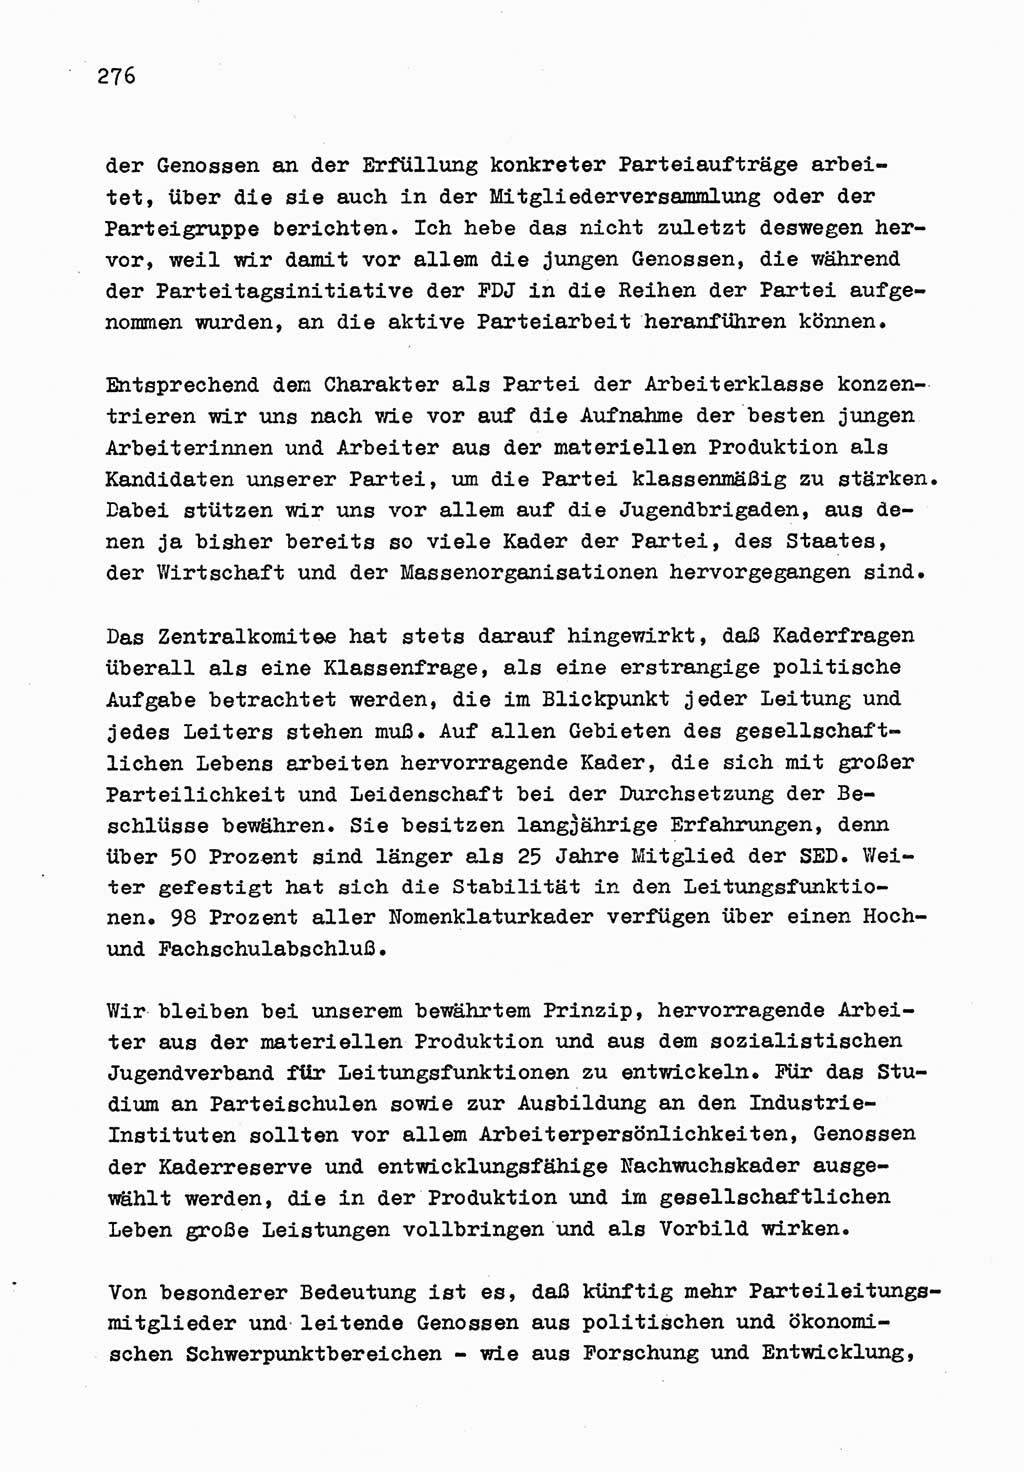 Zu Fragen der Parteiarbeit [Sozialistische Einheitspartei Deutschlands (SED) Deutsche Demokratische Republik (DDR)] 1979, Seite 276 (Fr. PA SED DDR 1979, S. 276)